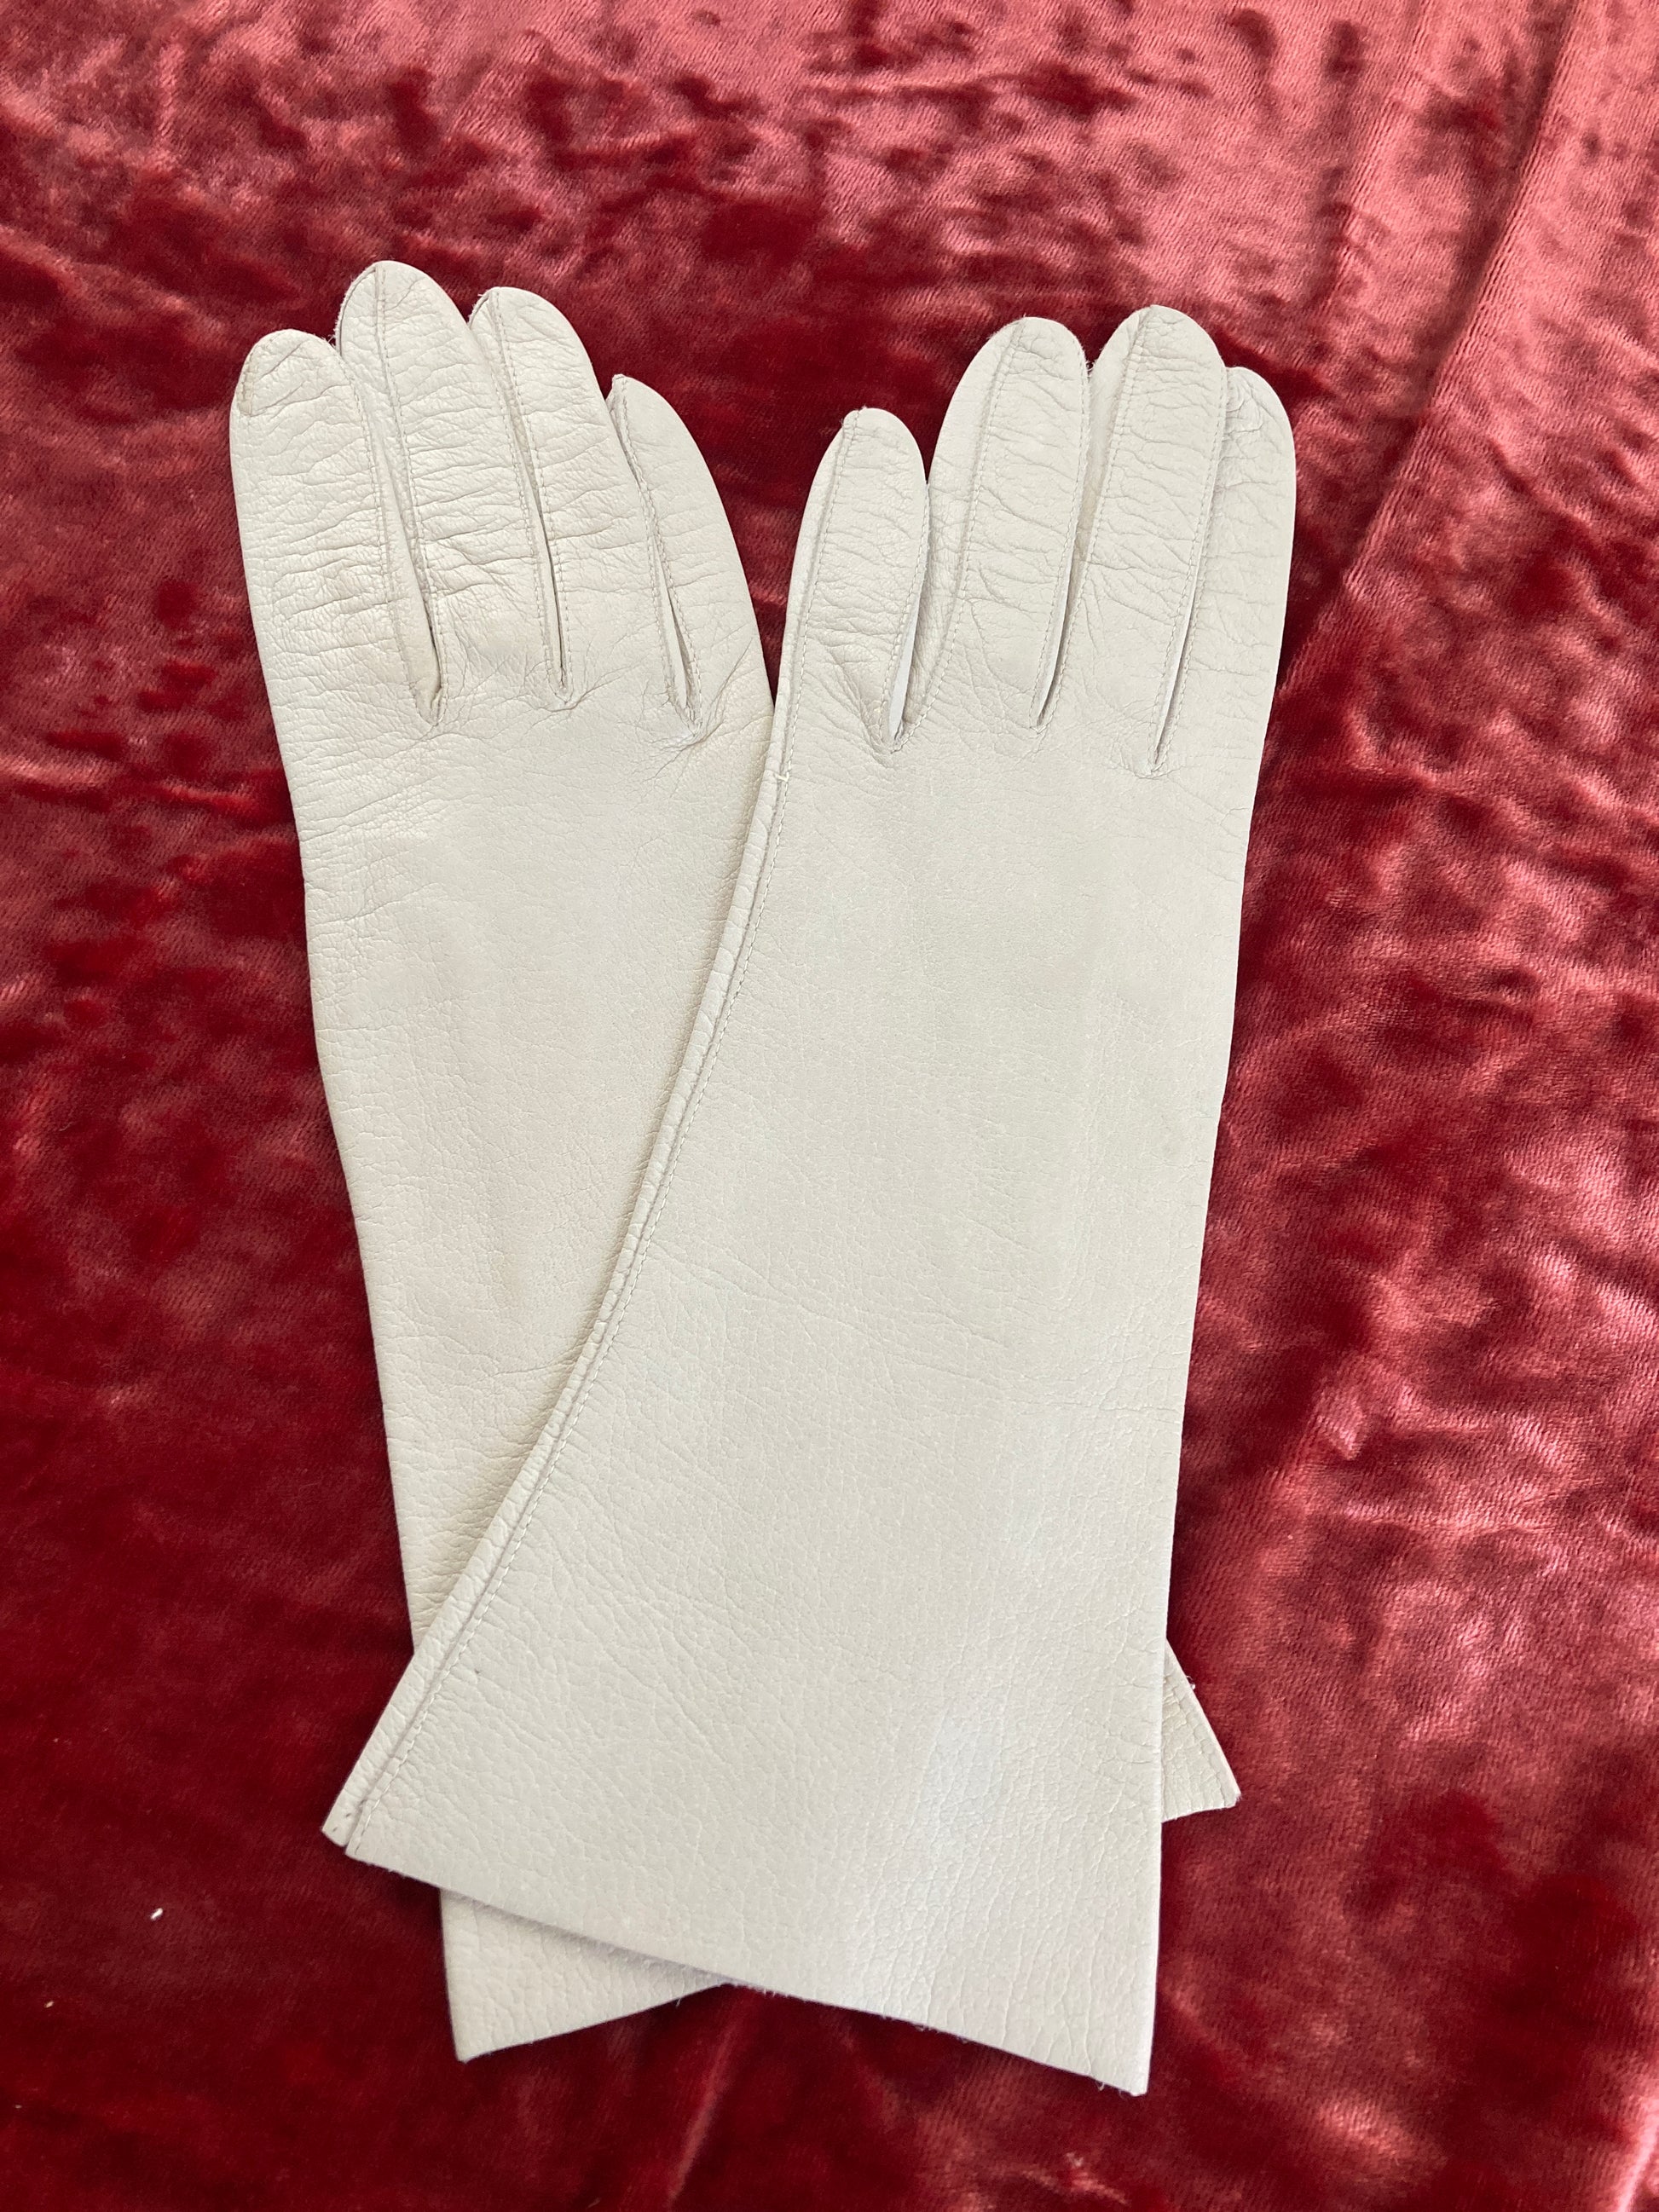 Vintage Kidskin Ladies Gloves in Cream or Ivory Size 6